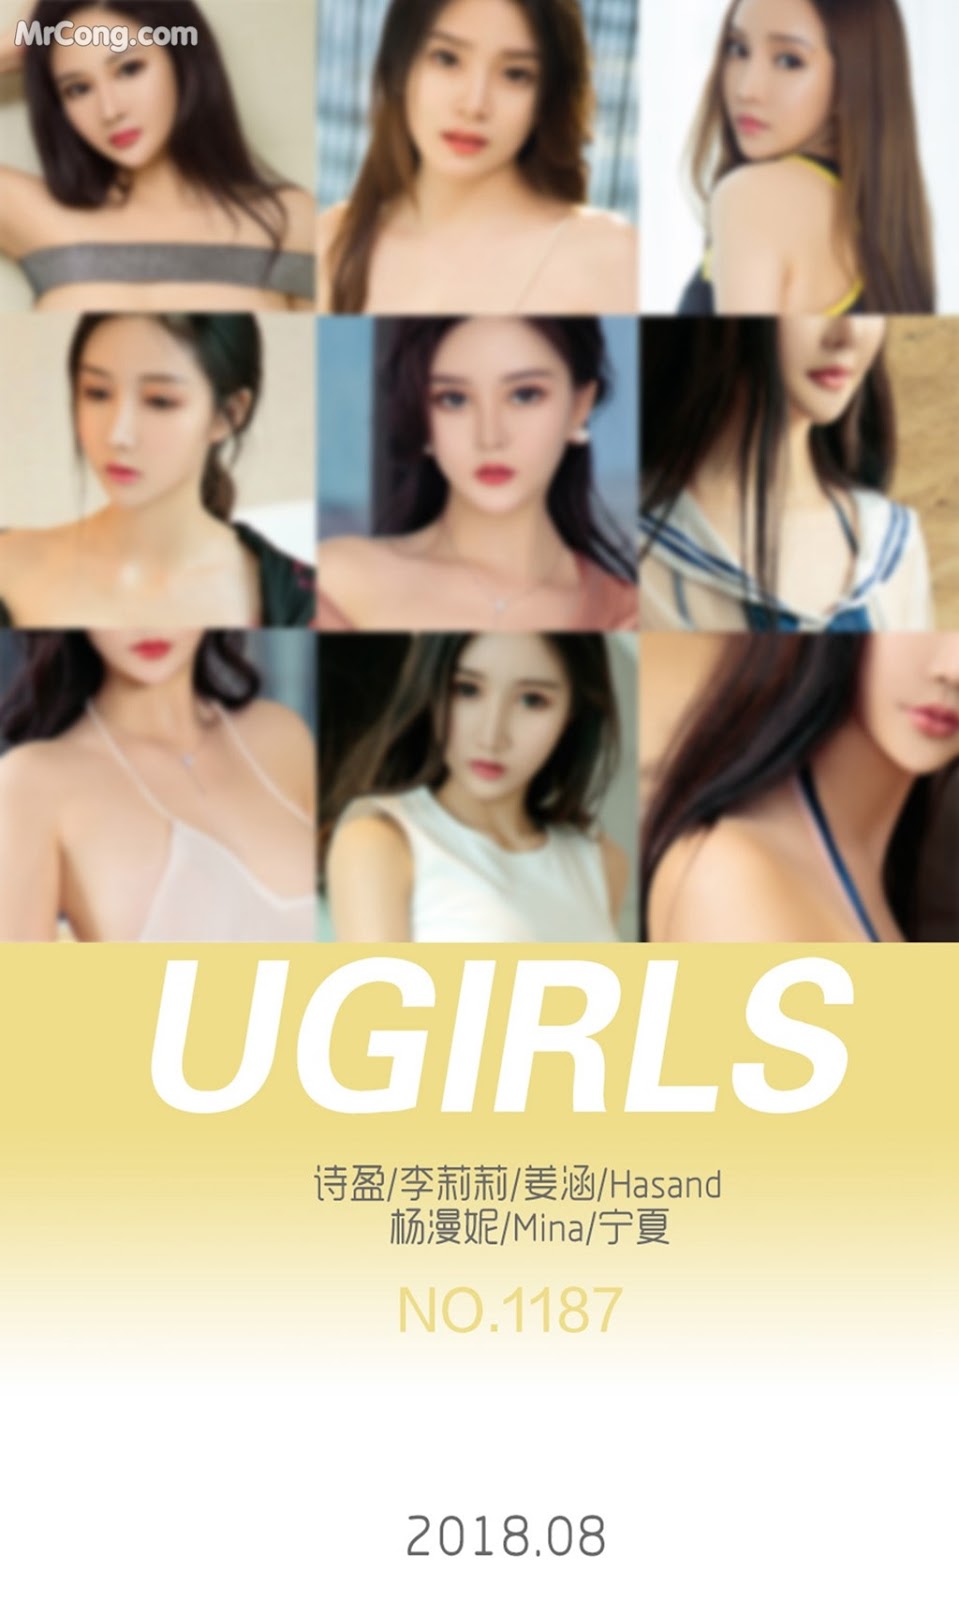 UGIRLS - Ai You Wu App No.1187: Various Models (35 photos)